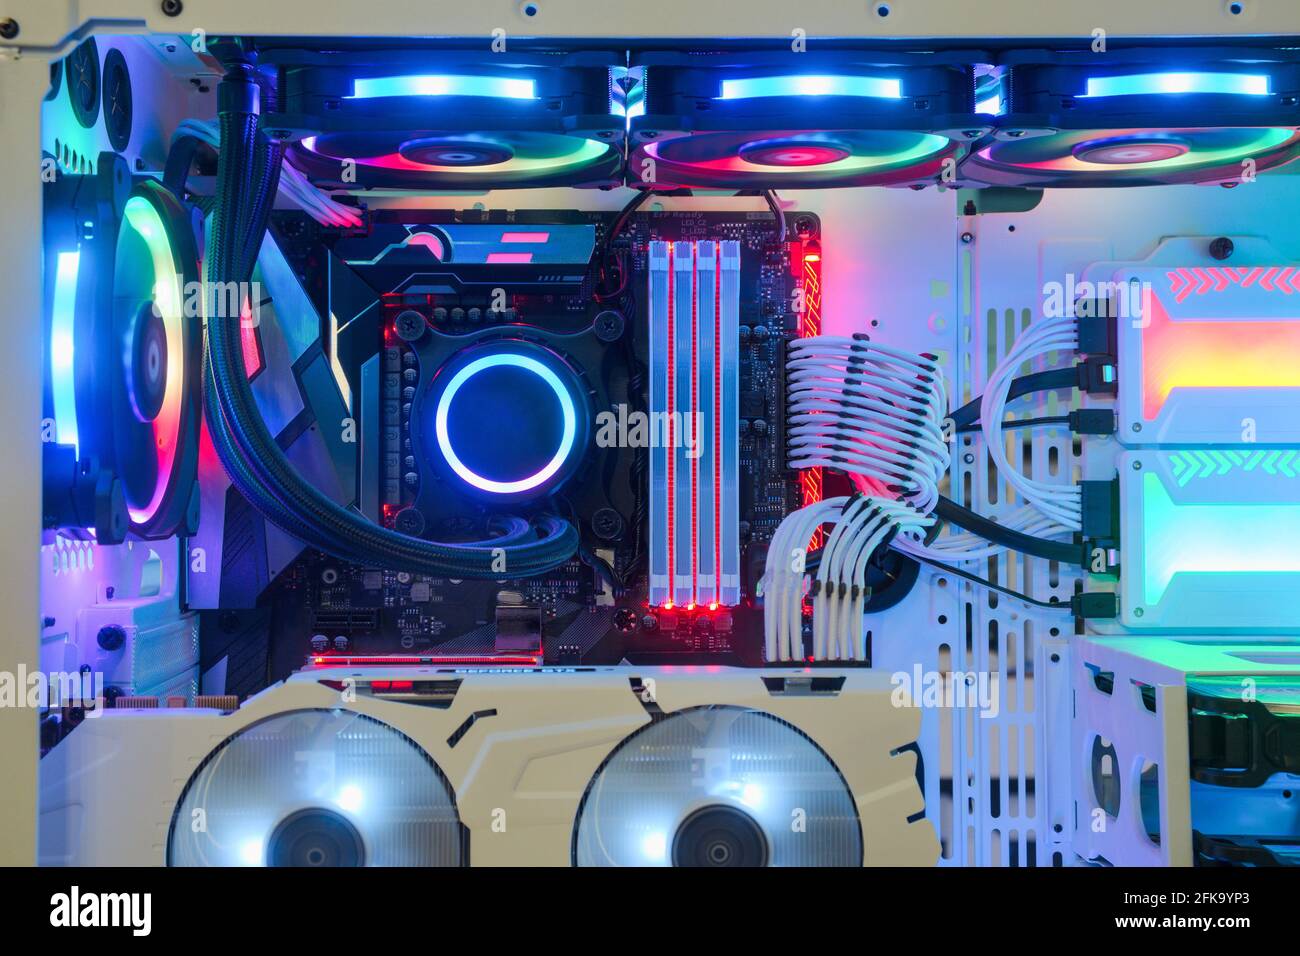 Primo piano e interno PC desktop Gaming and Cooling Fan CPU con LED multicolore RGB mostra lo stato in modalità di lavoro, case per PC interno Foto Stock